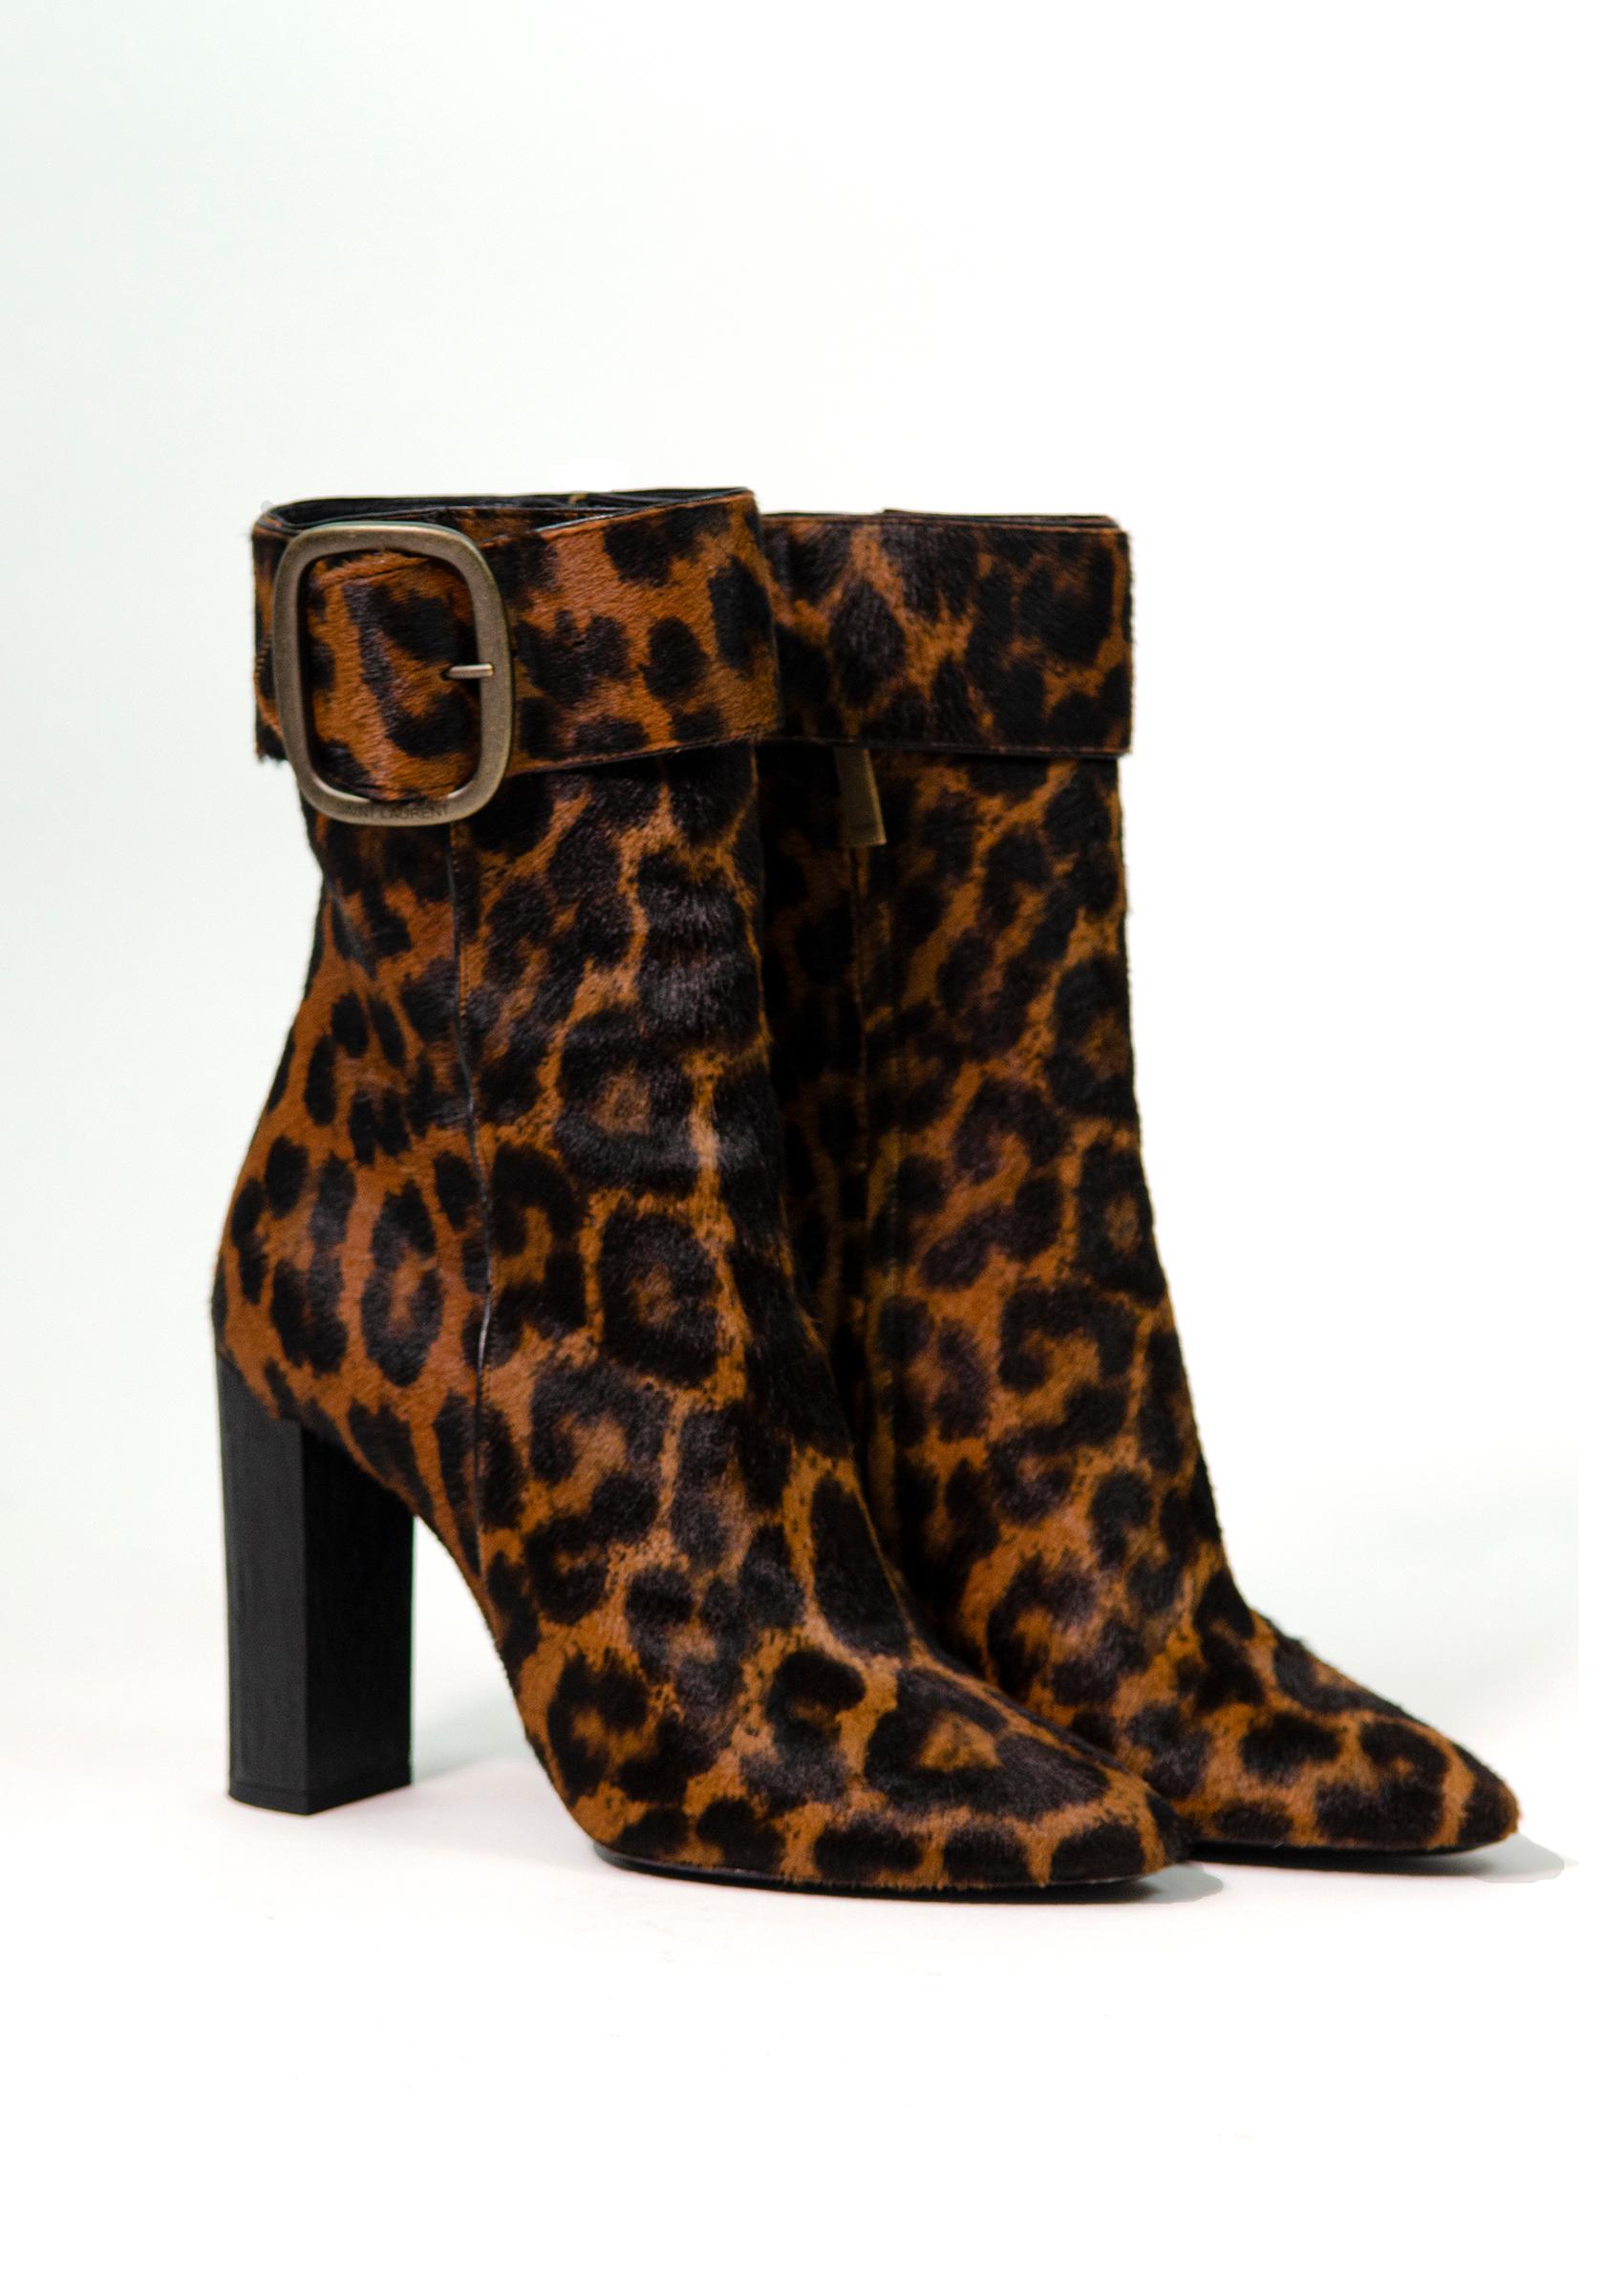 Atemberaubende Joplin-Stiefel aus Ponyhaar von Saint Laurent mit Leopardenmuster<3

Diese Joplin-Stiefel aus Kalbsleder in Ponyhaar-Optik haben eine ausgesprochen moderne Silhouette mit einer großen Schnalle und einem Blockabsatz. Auf der Schnalle